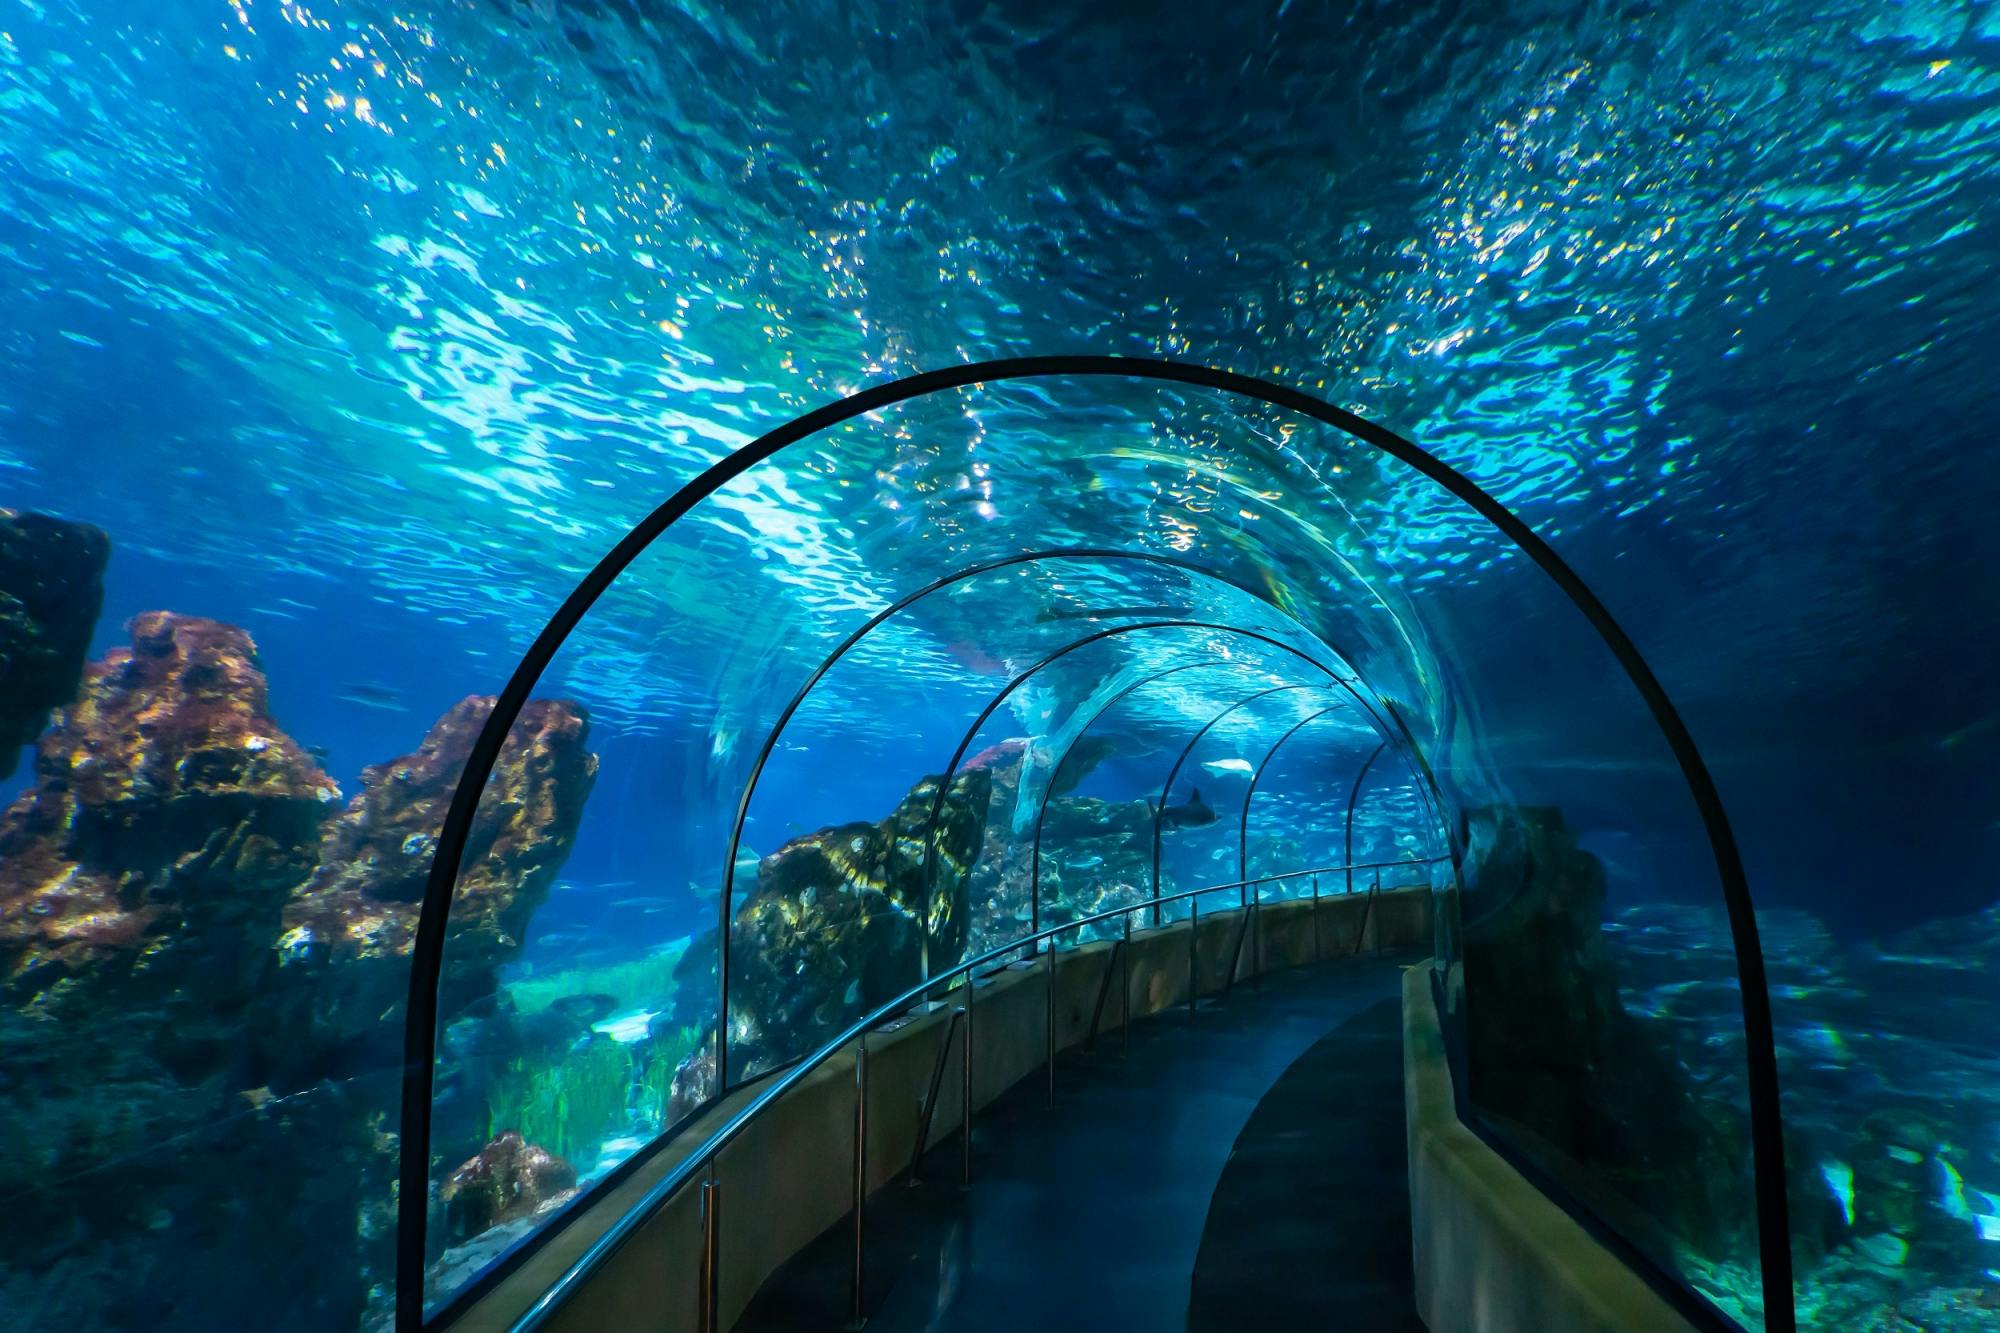 Barcelona Aquarium skip the line tickets Musement